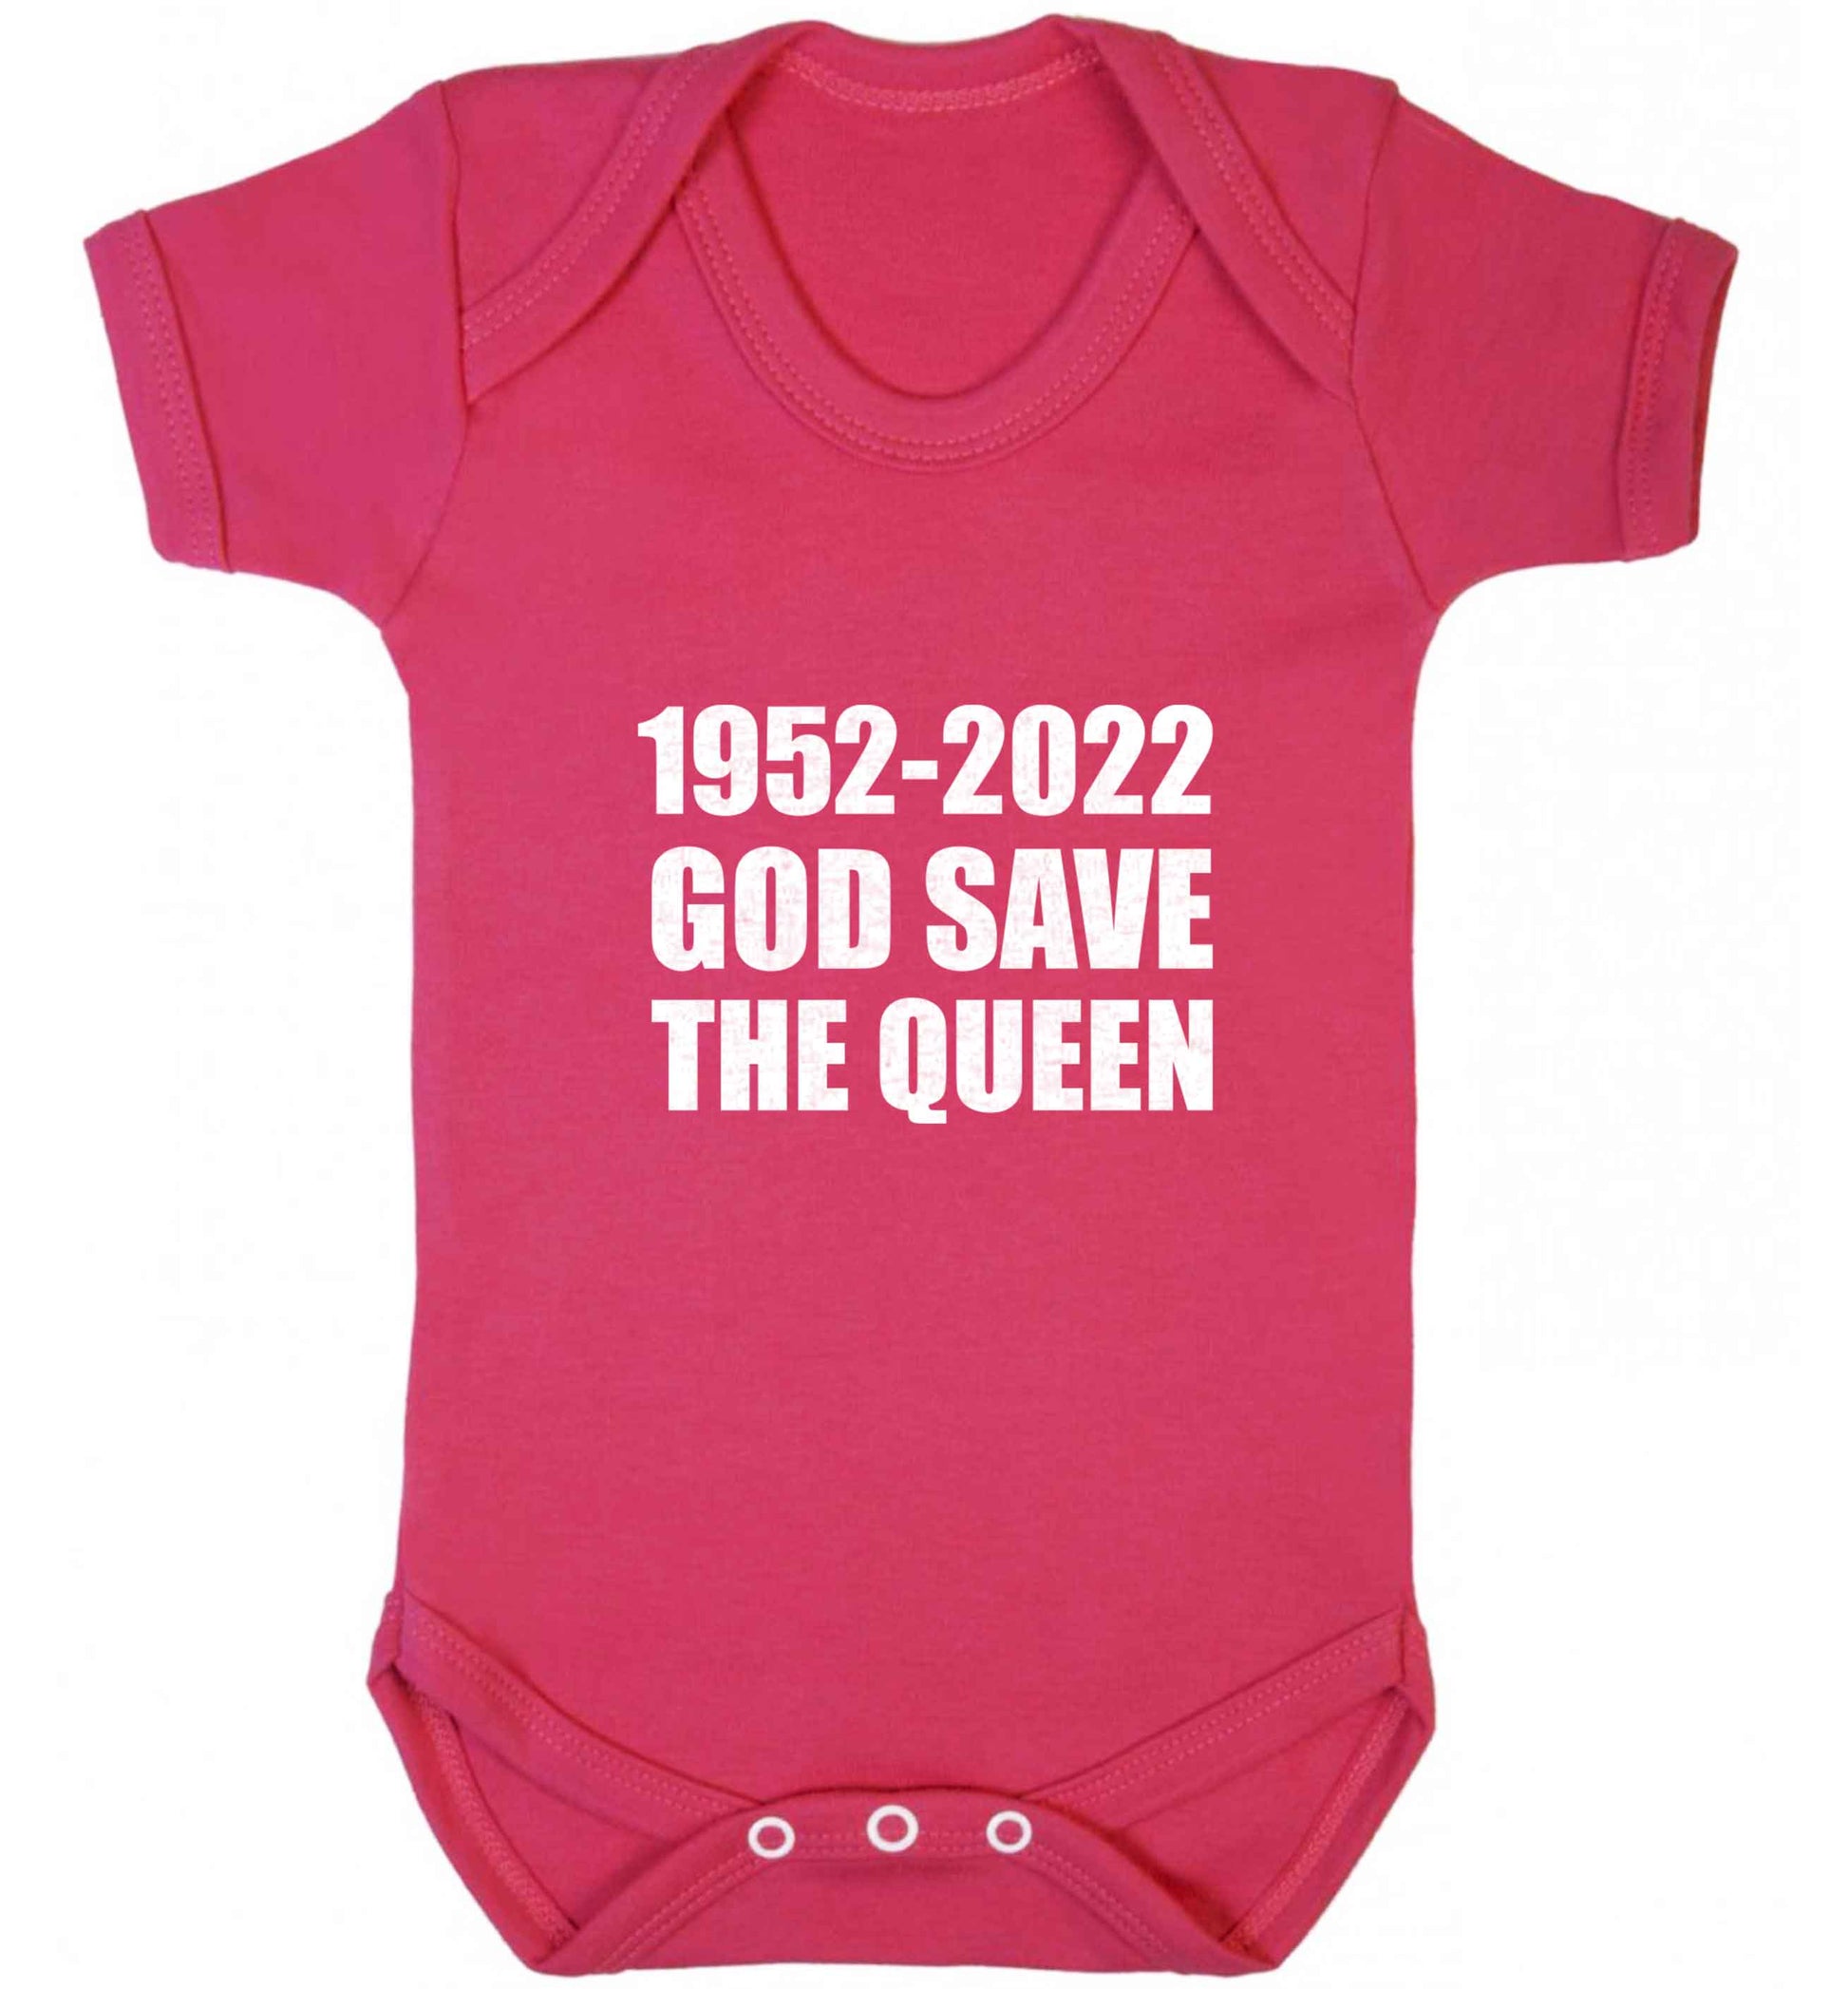 God save the queen baby vest dark pink 18-24 months